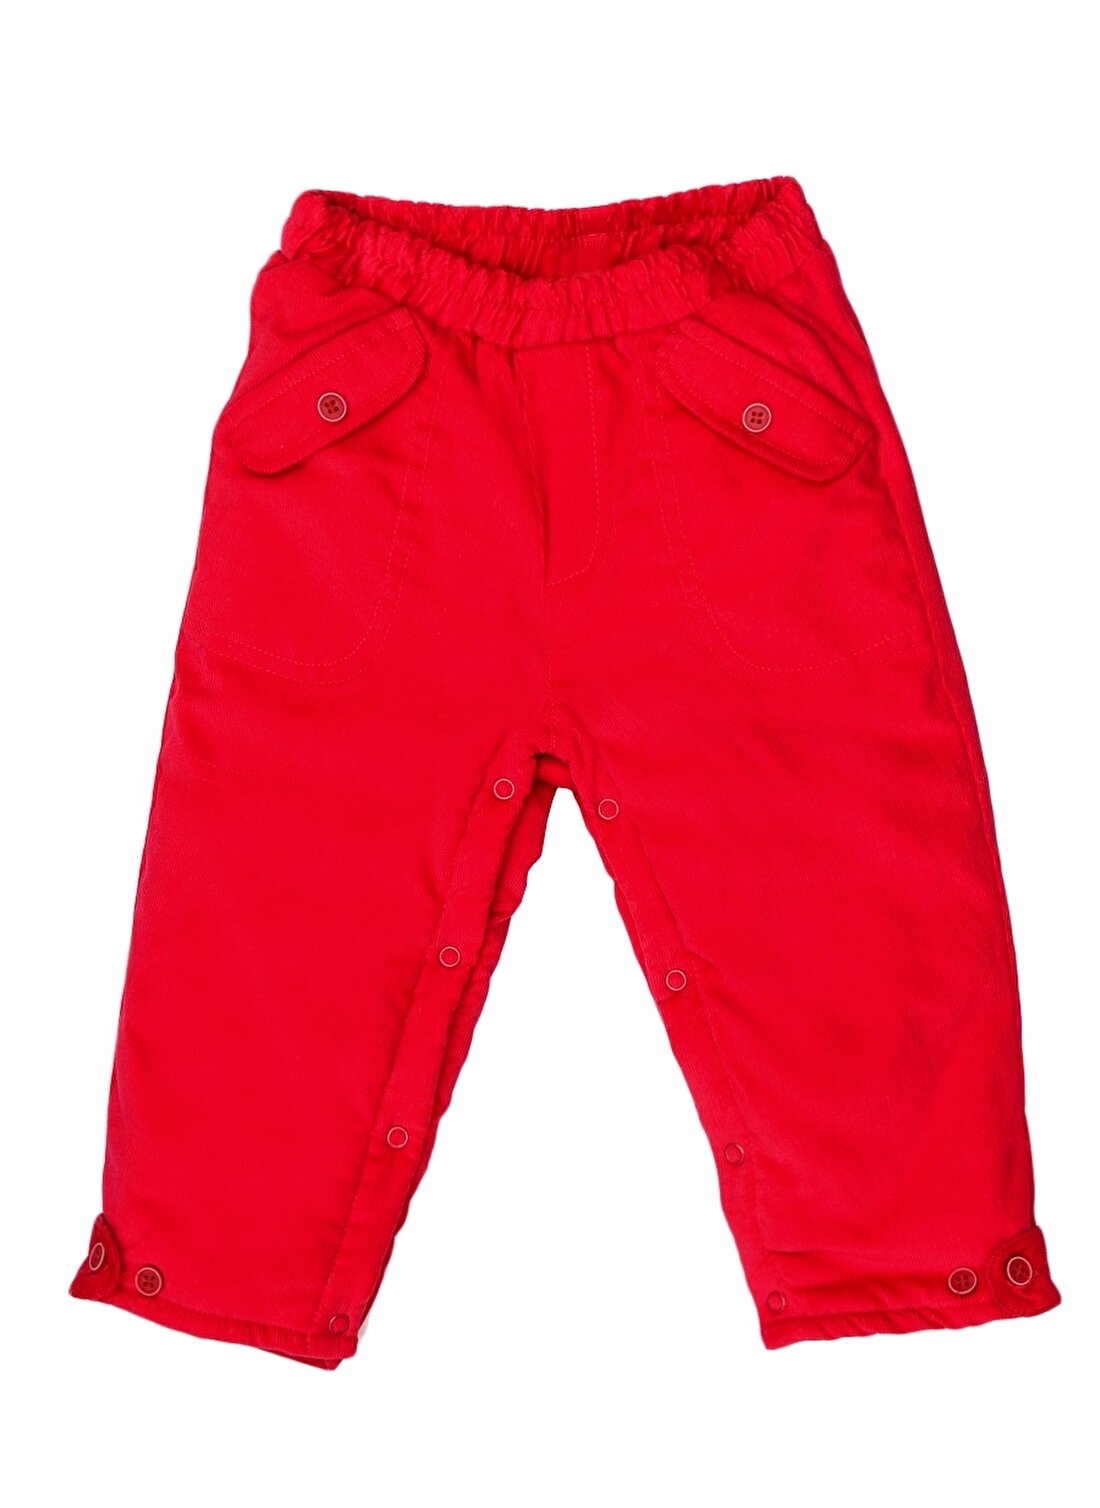 Mammaramma Lastikli Bel Kırmızı Erkek Çocuk Pantolon